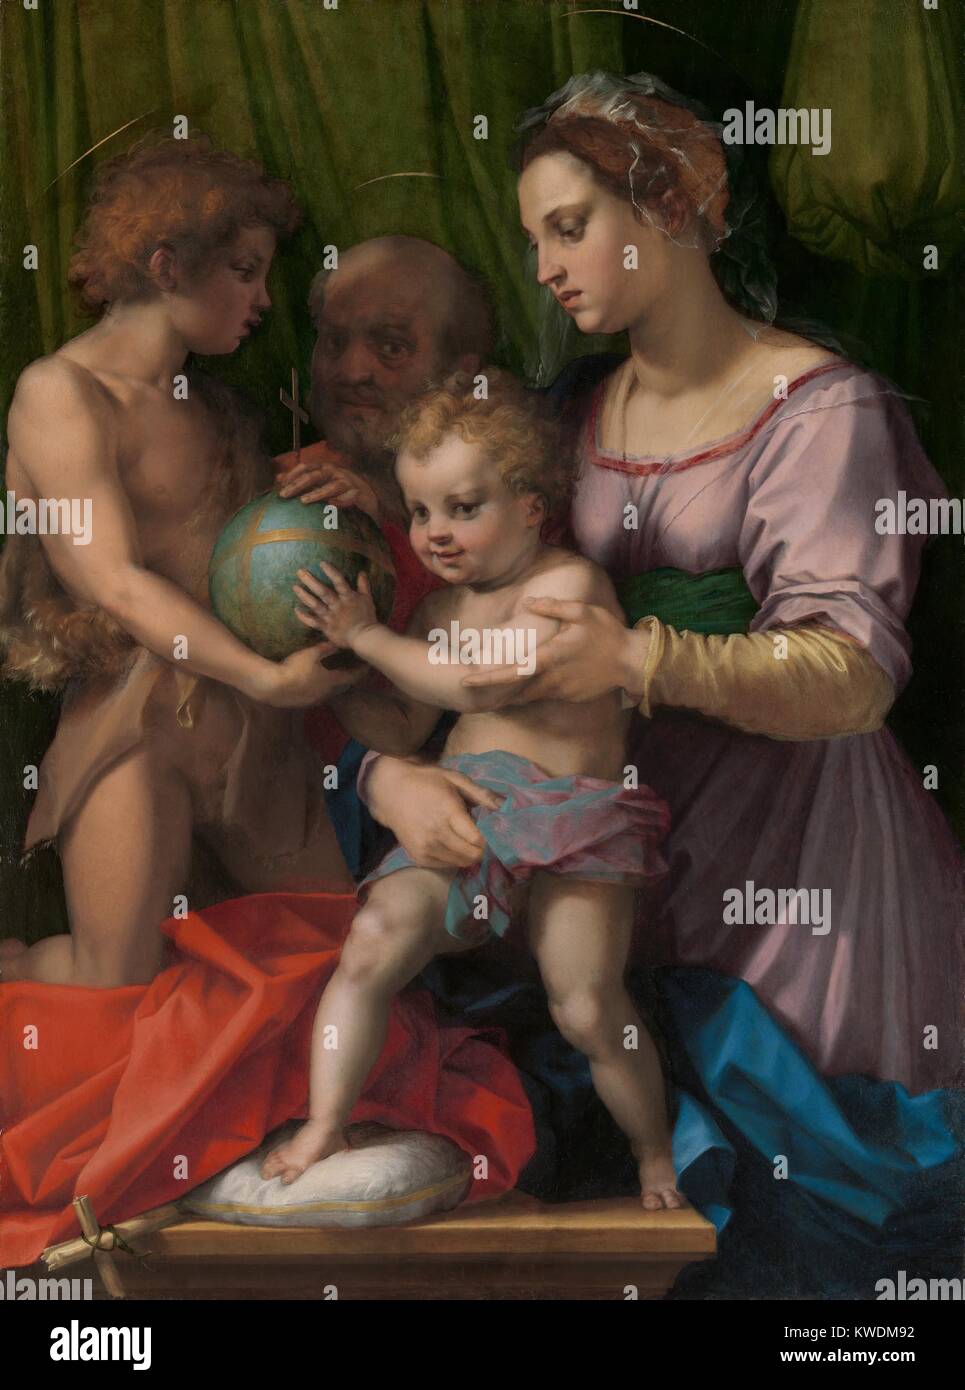 Heilige Familie mit ST. Johannes der Täufer, von Andrea del Sarto, 1500-30, italienische Renaissance Malerei. Der Künstler war ein Zeitgenosse von Leonardo und teilt seine sanfte Beleuchtung, komplexe und natürliche Abbildung Gruppen (BSLOC 2017 16 43) Stockfoto